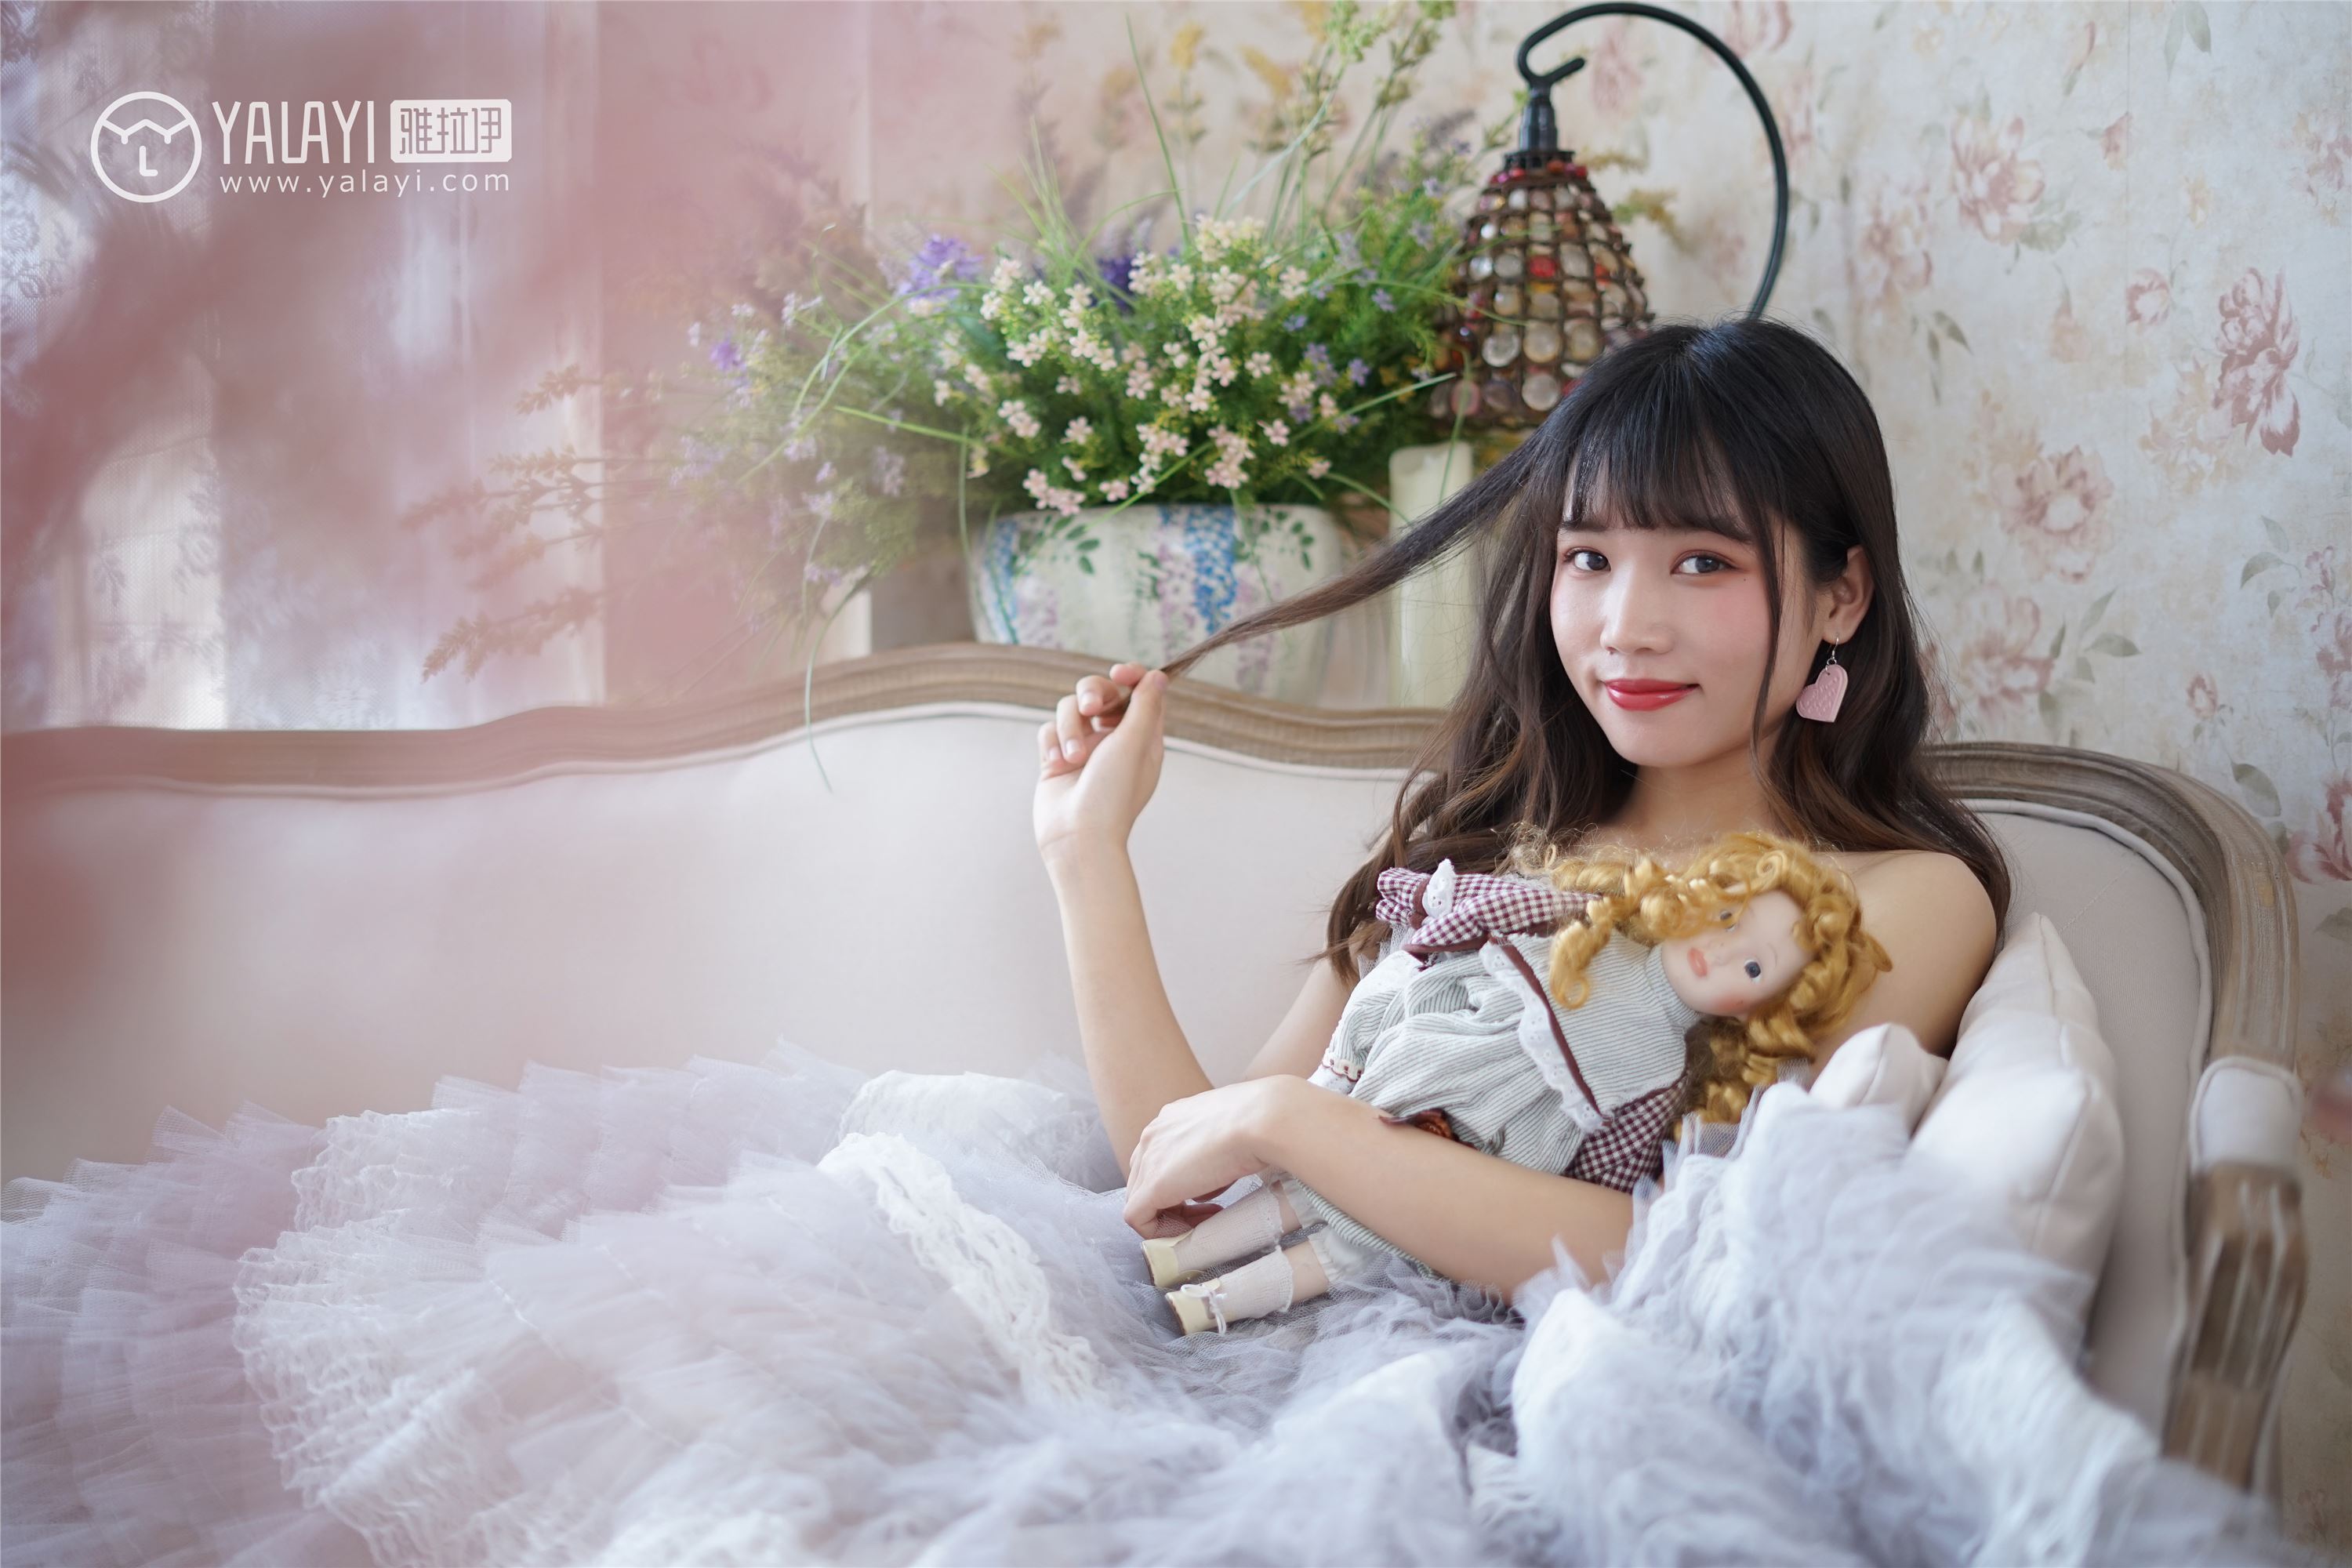 [yalayi yalayi] 2018.06.01 no.003 princess's tulle skirt Princess rabbit